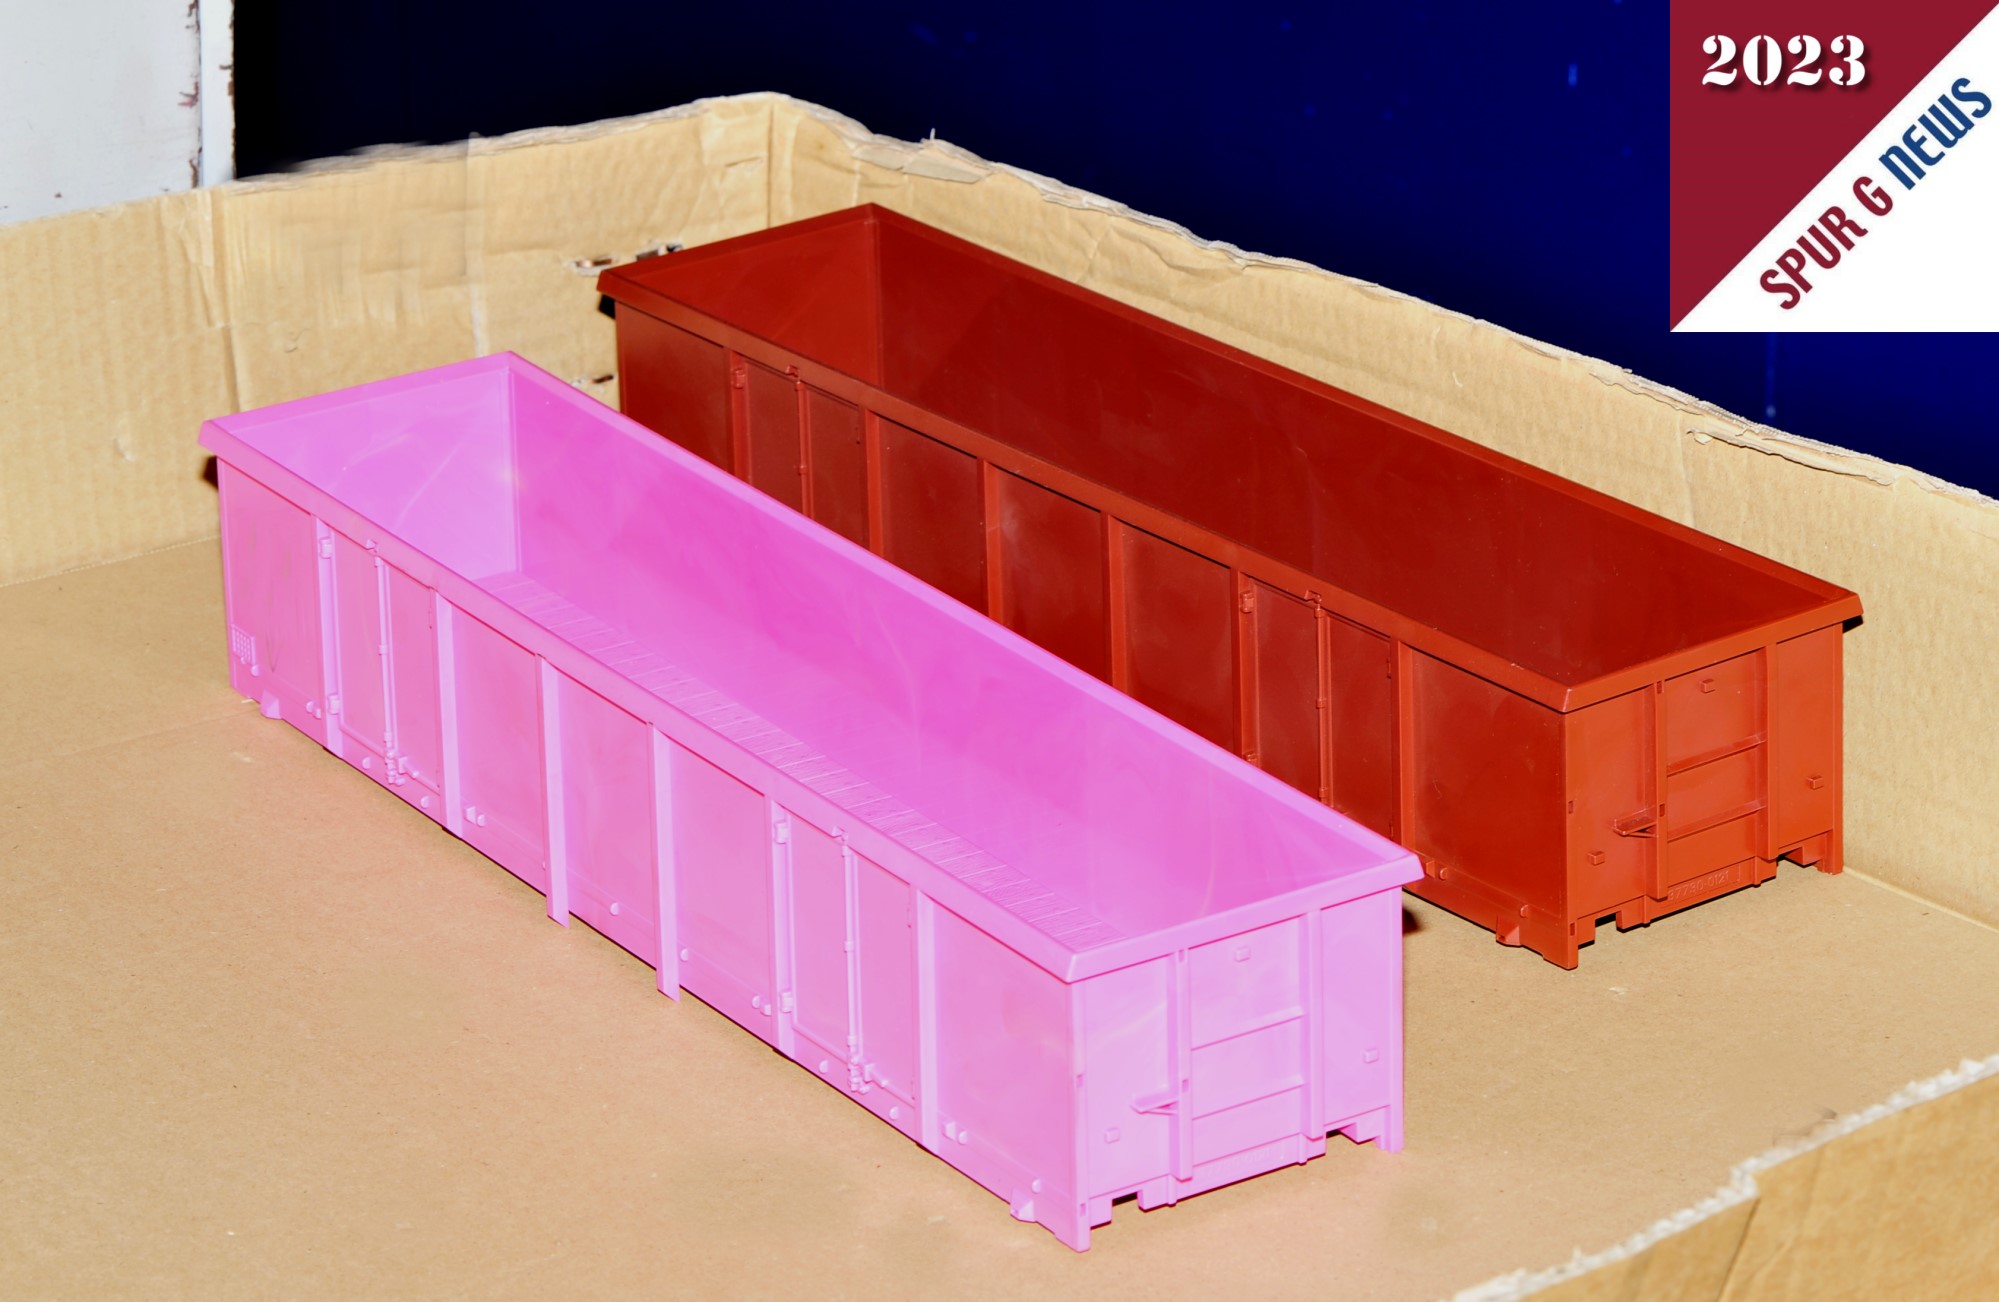 In der Spritzmaschinenhalle sind bereits zwei Neuheiten gefertigt: Links Art. Nr. 37013  Wagenkasten des offenen Güterwagens Eaos in pink der SBB und rechts der offene Güterwagen Eaos der DB, Art. Nr. 37012.